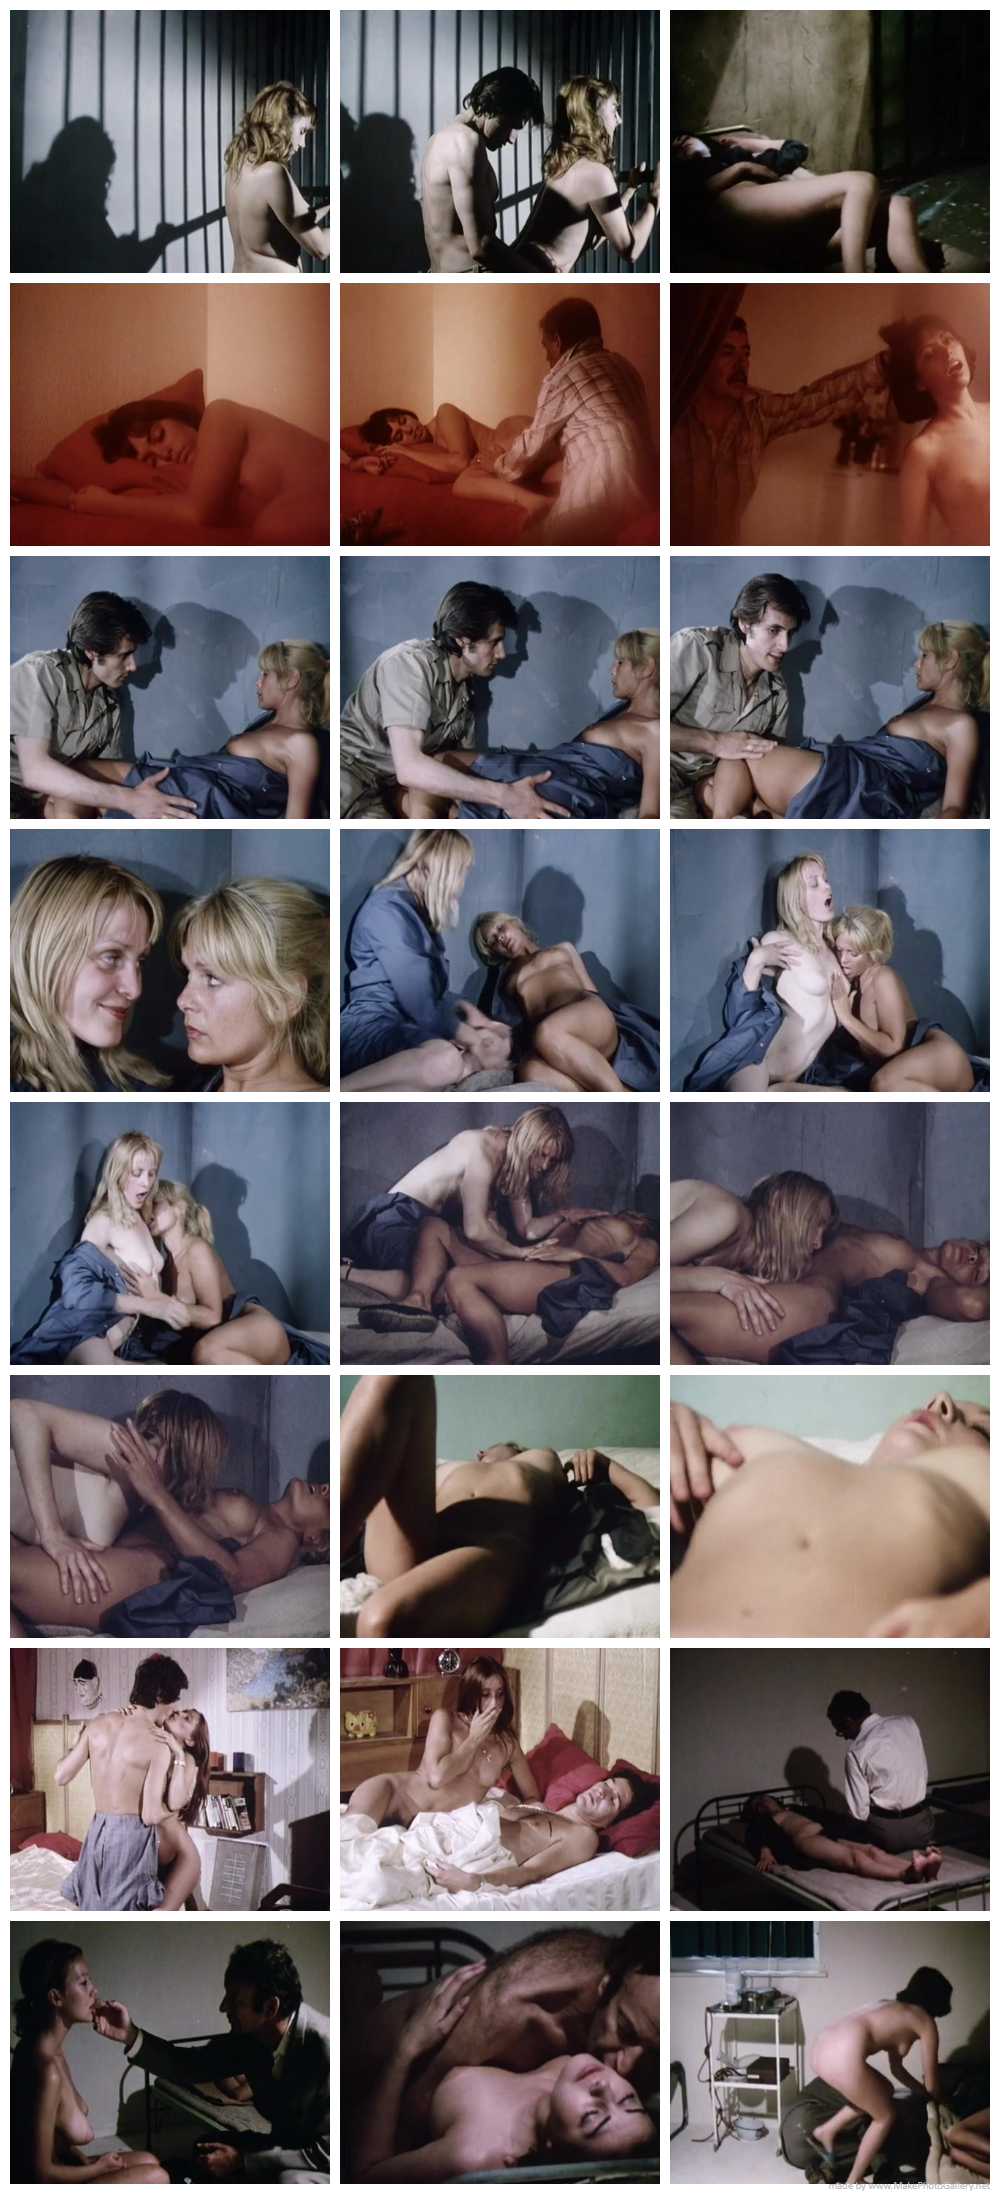 Les gardiennes du pénitencier (1981) EroGarga Watch Free Vintage Porn Movies, Retro Sex Videos, Mobile Porn